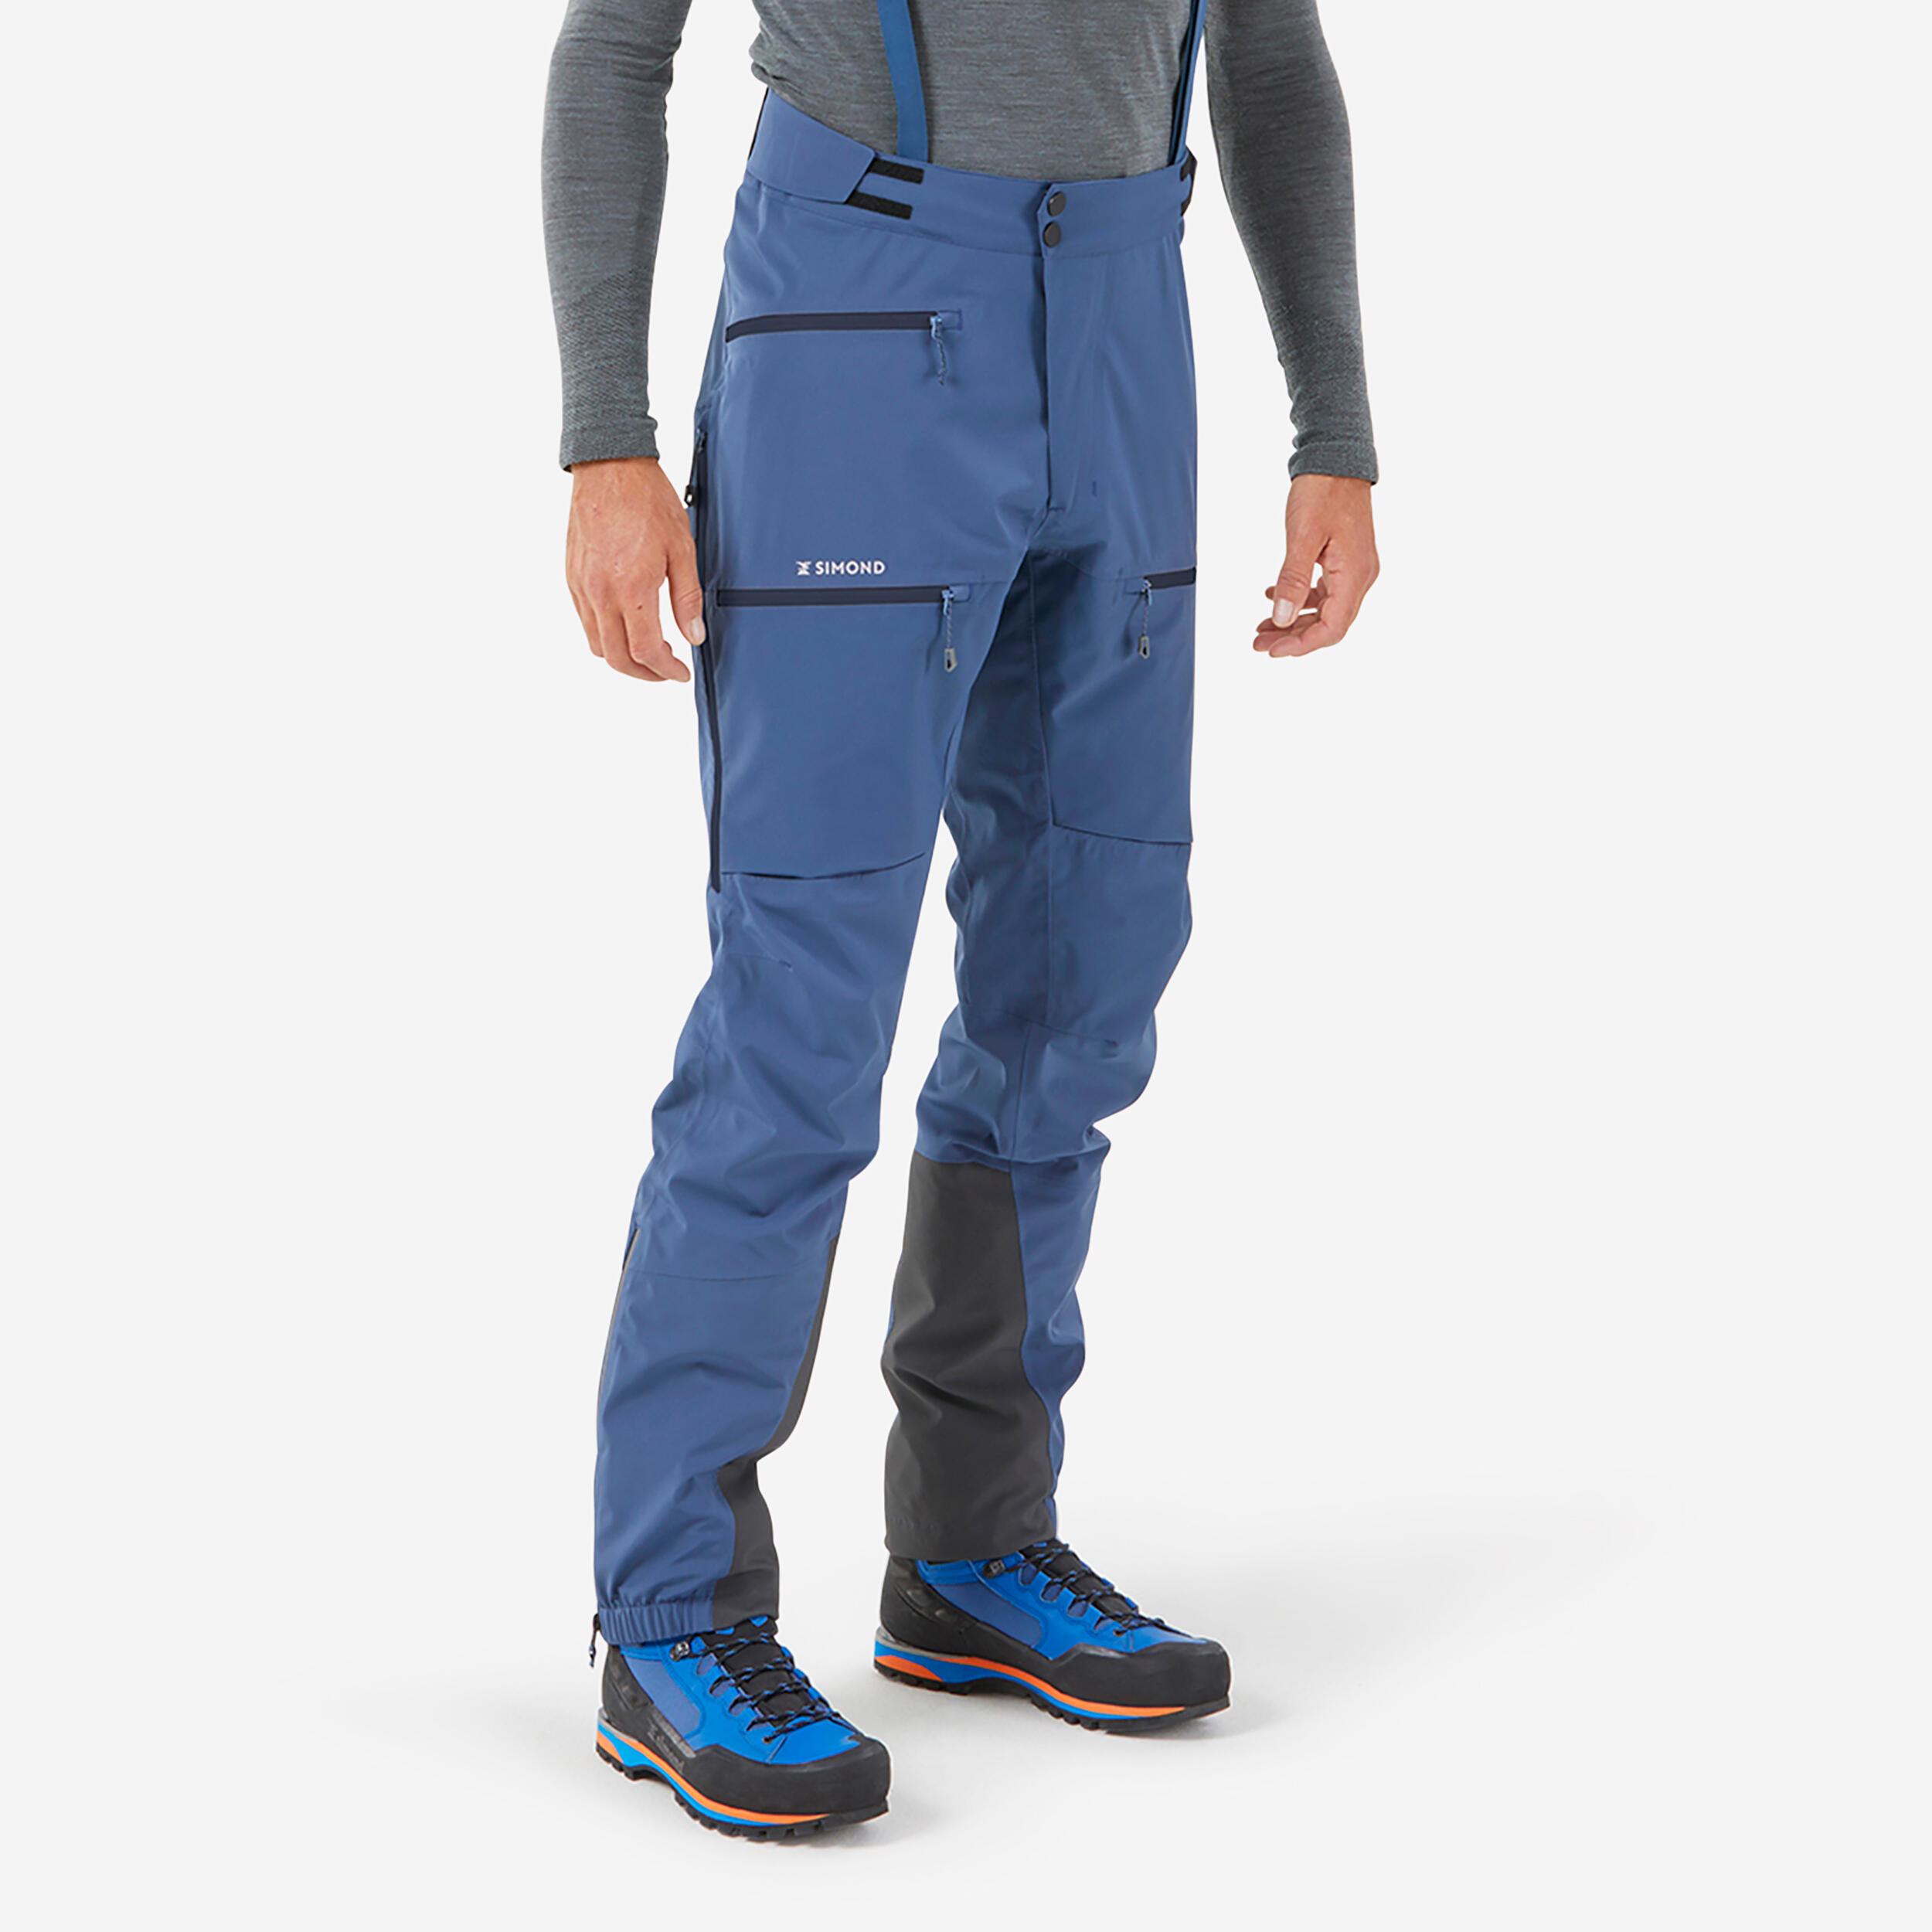 Men's mountaineering waterproof ICE trousers - Slate blue 2/17